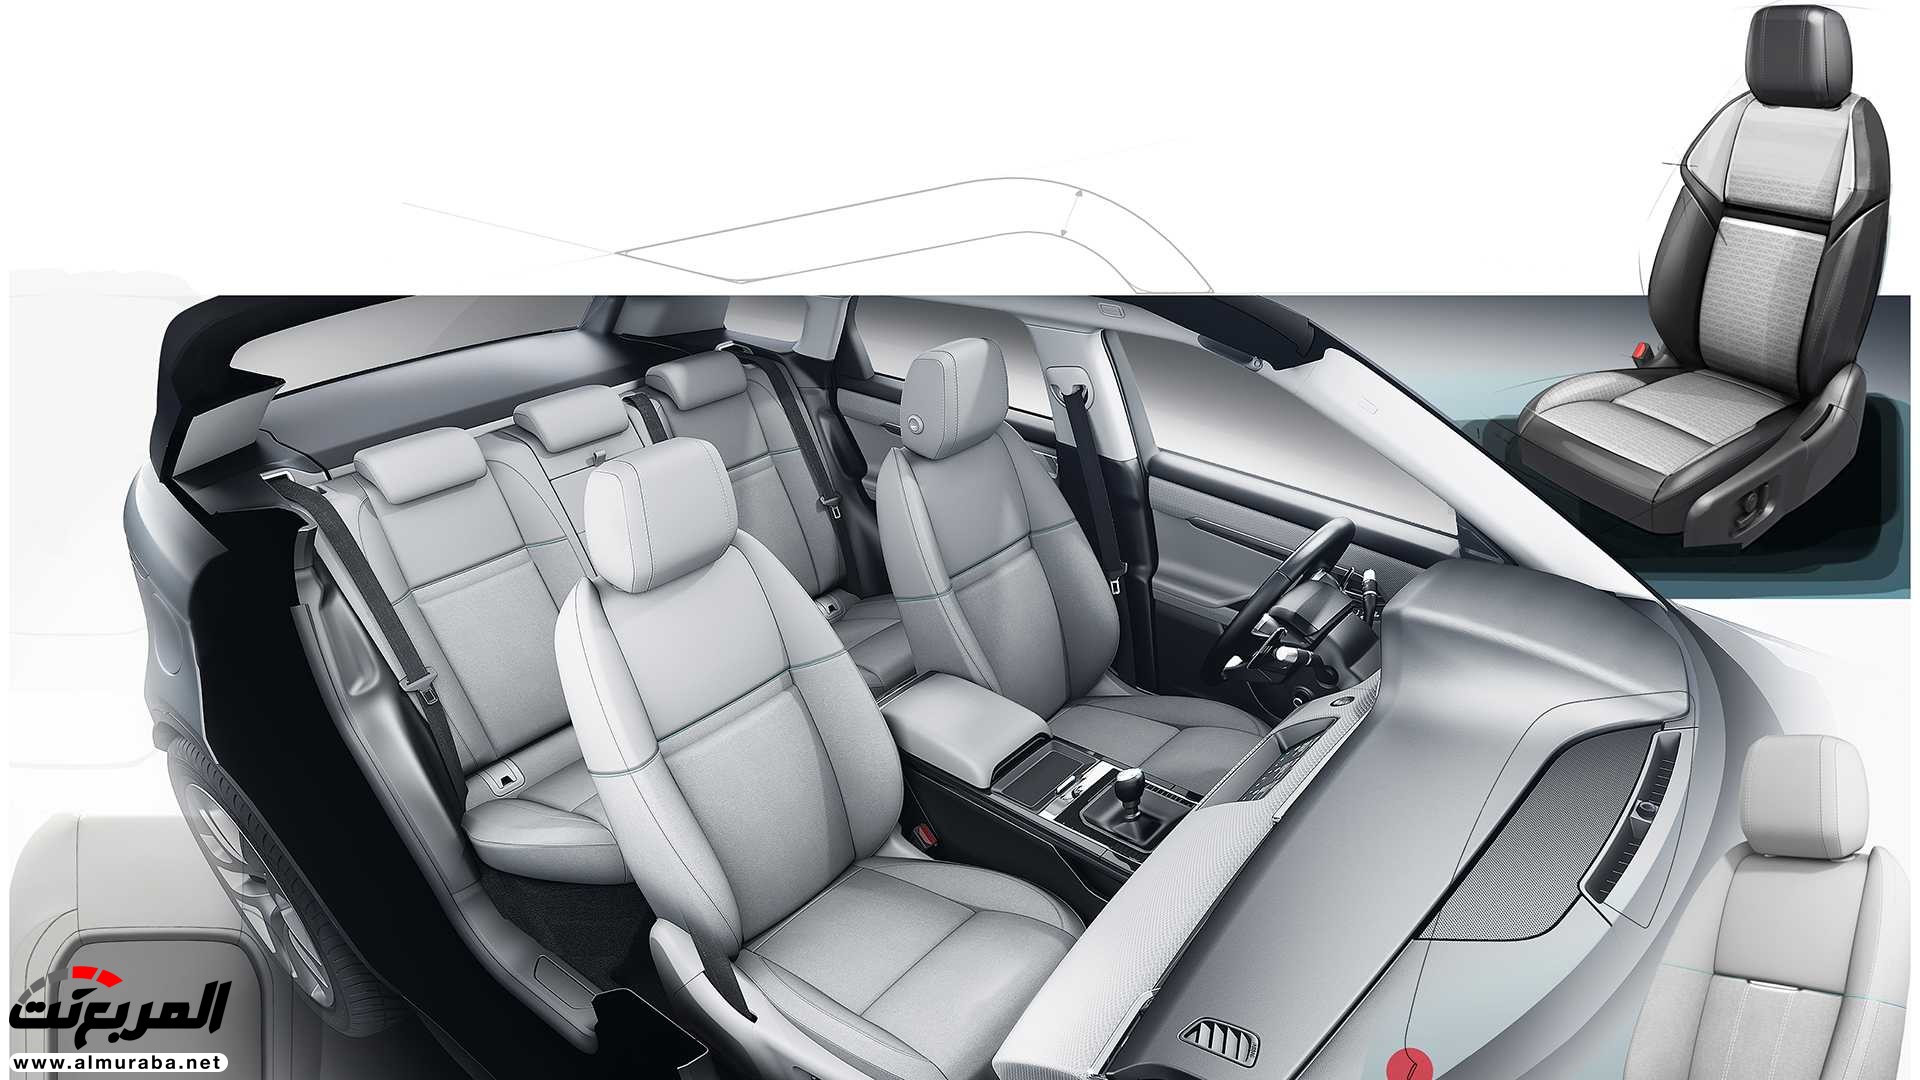 اهم 7 معلومات عن رنج روفر ايفوك 2020 الجديدة كلياً Range Rover Evoque 93